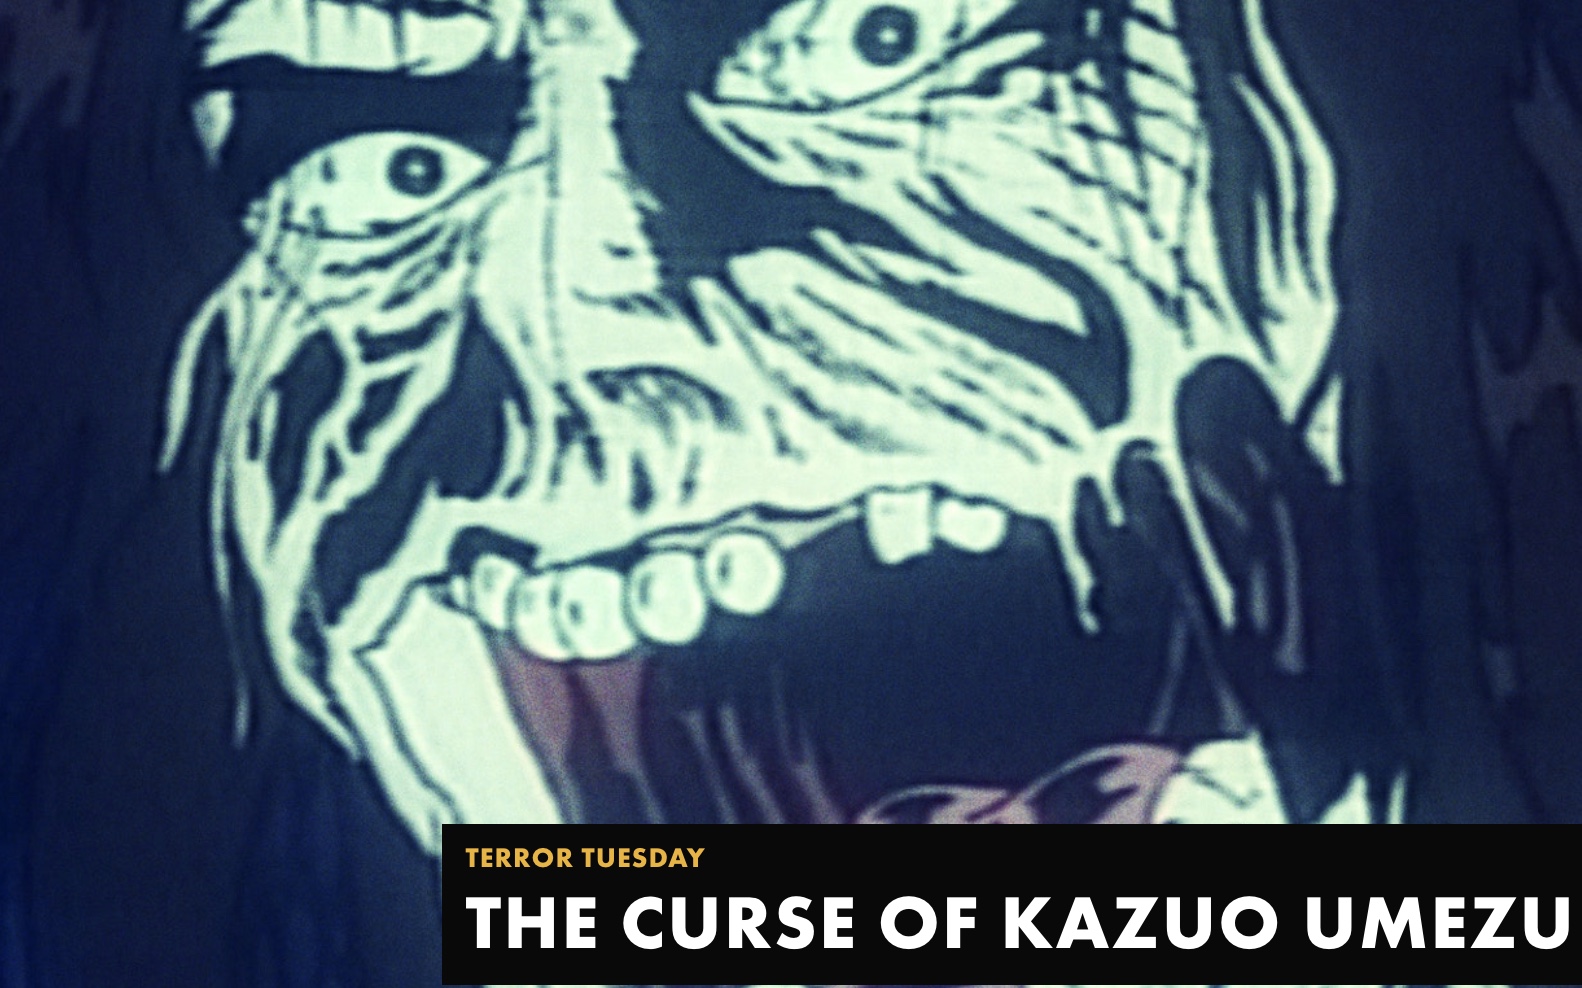 THE CURSE OF KAZUO UMEZU